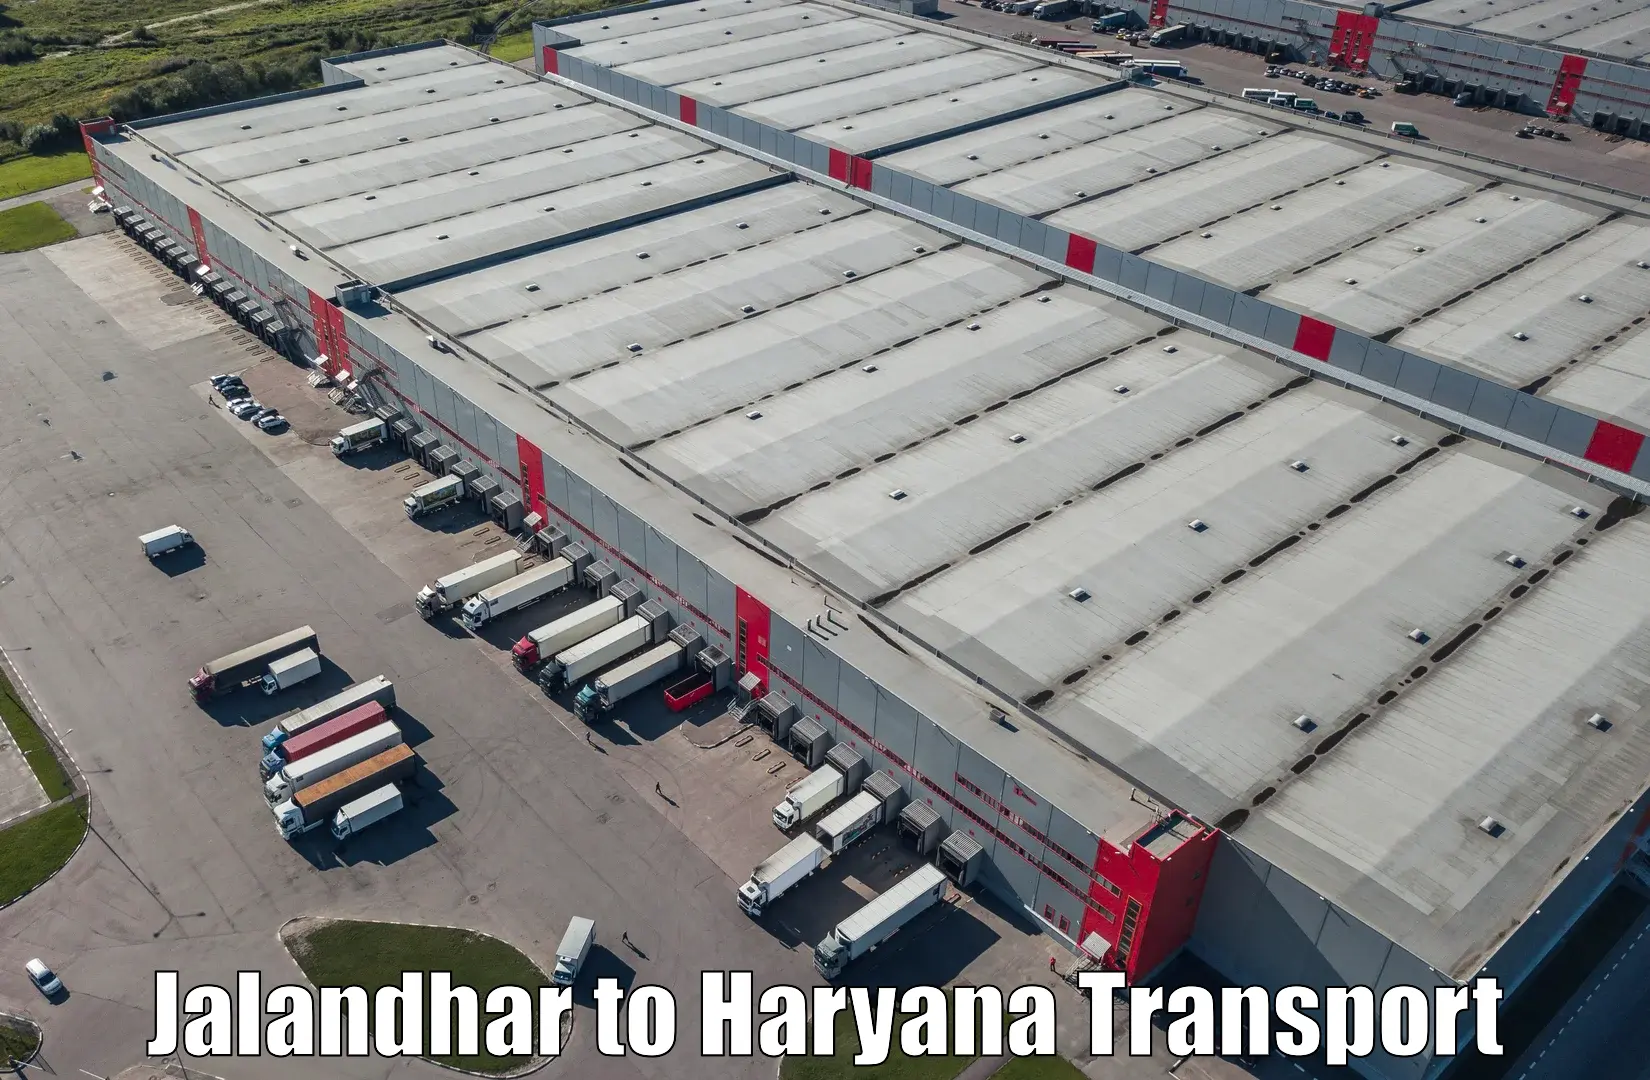 Air freight transport services Jalandhar to Dharuhera